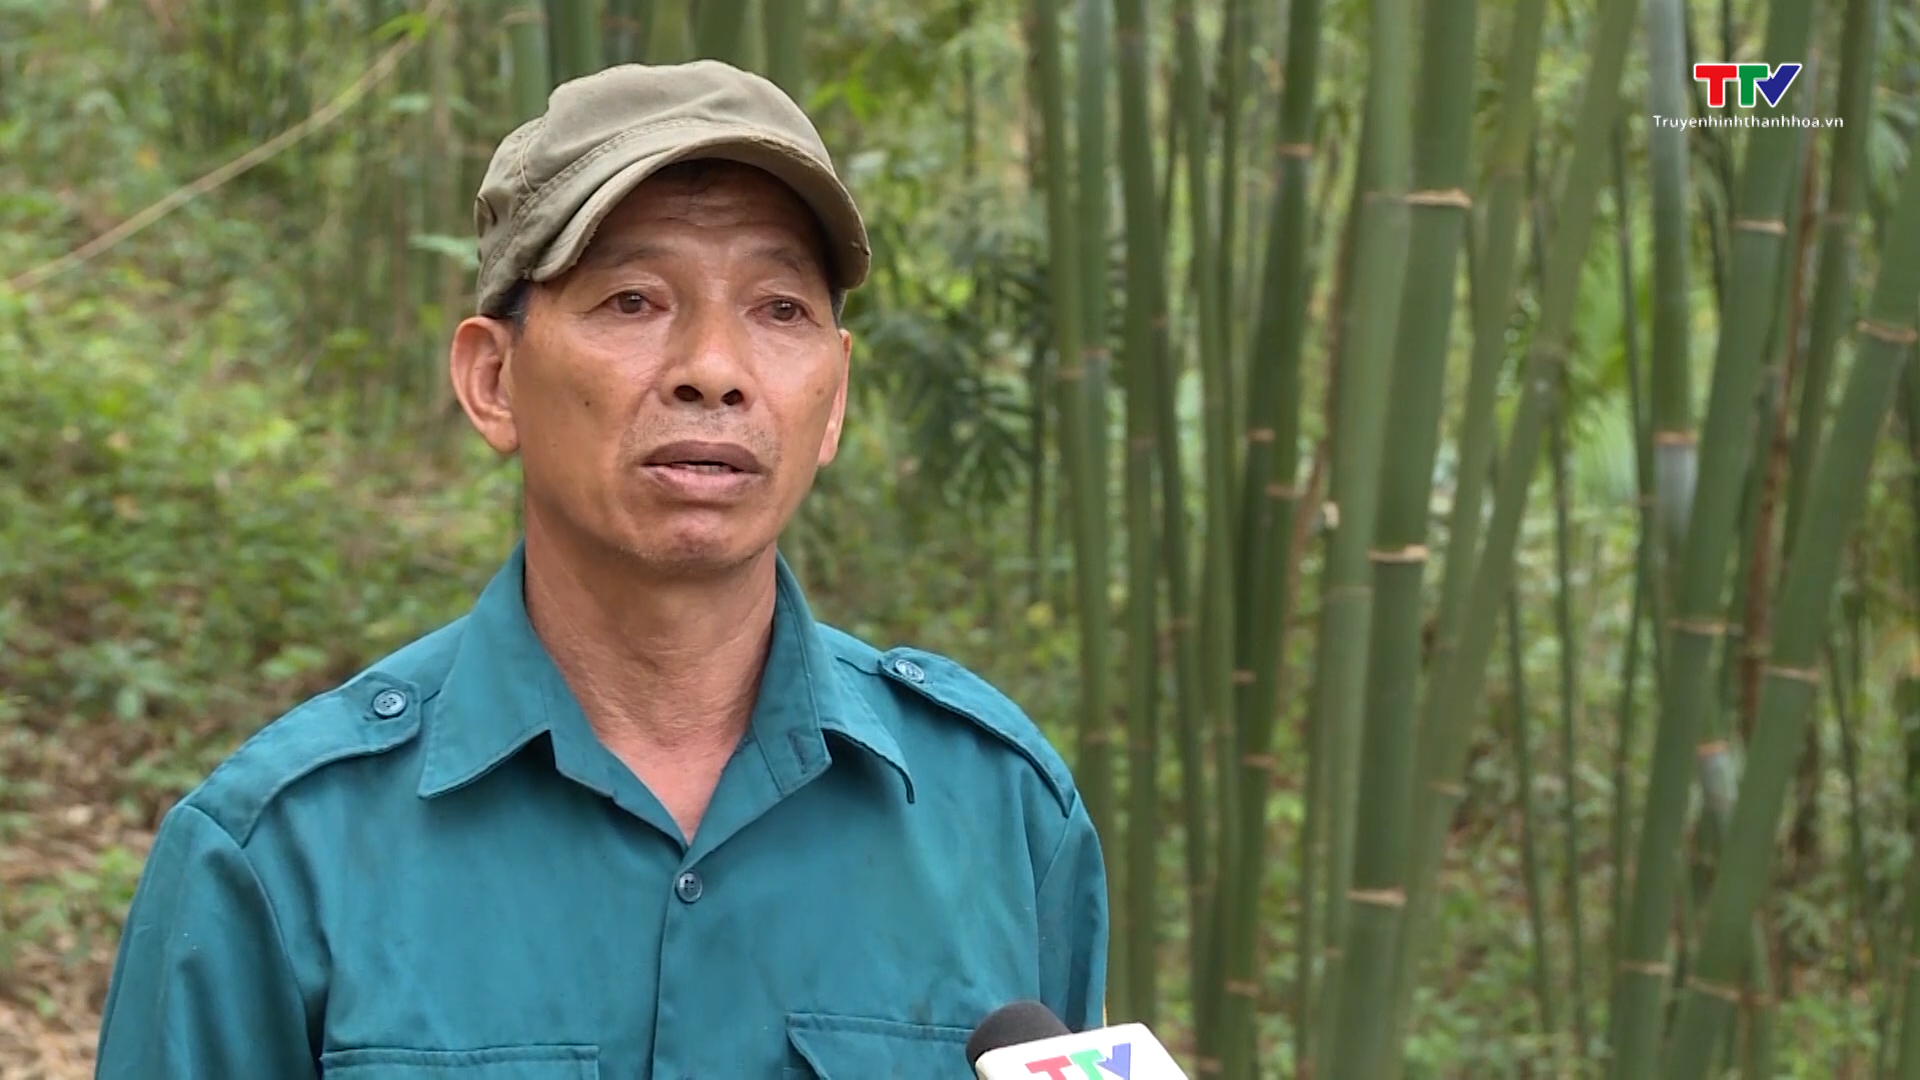 Tăng cường công tác tuyên truyền pháp luật bảo vệ rừng ở miền núi Thanh Hóa - Ảnh 3.